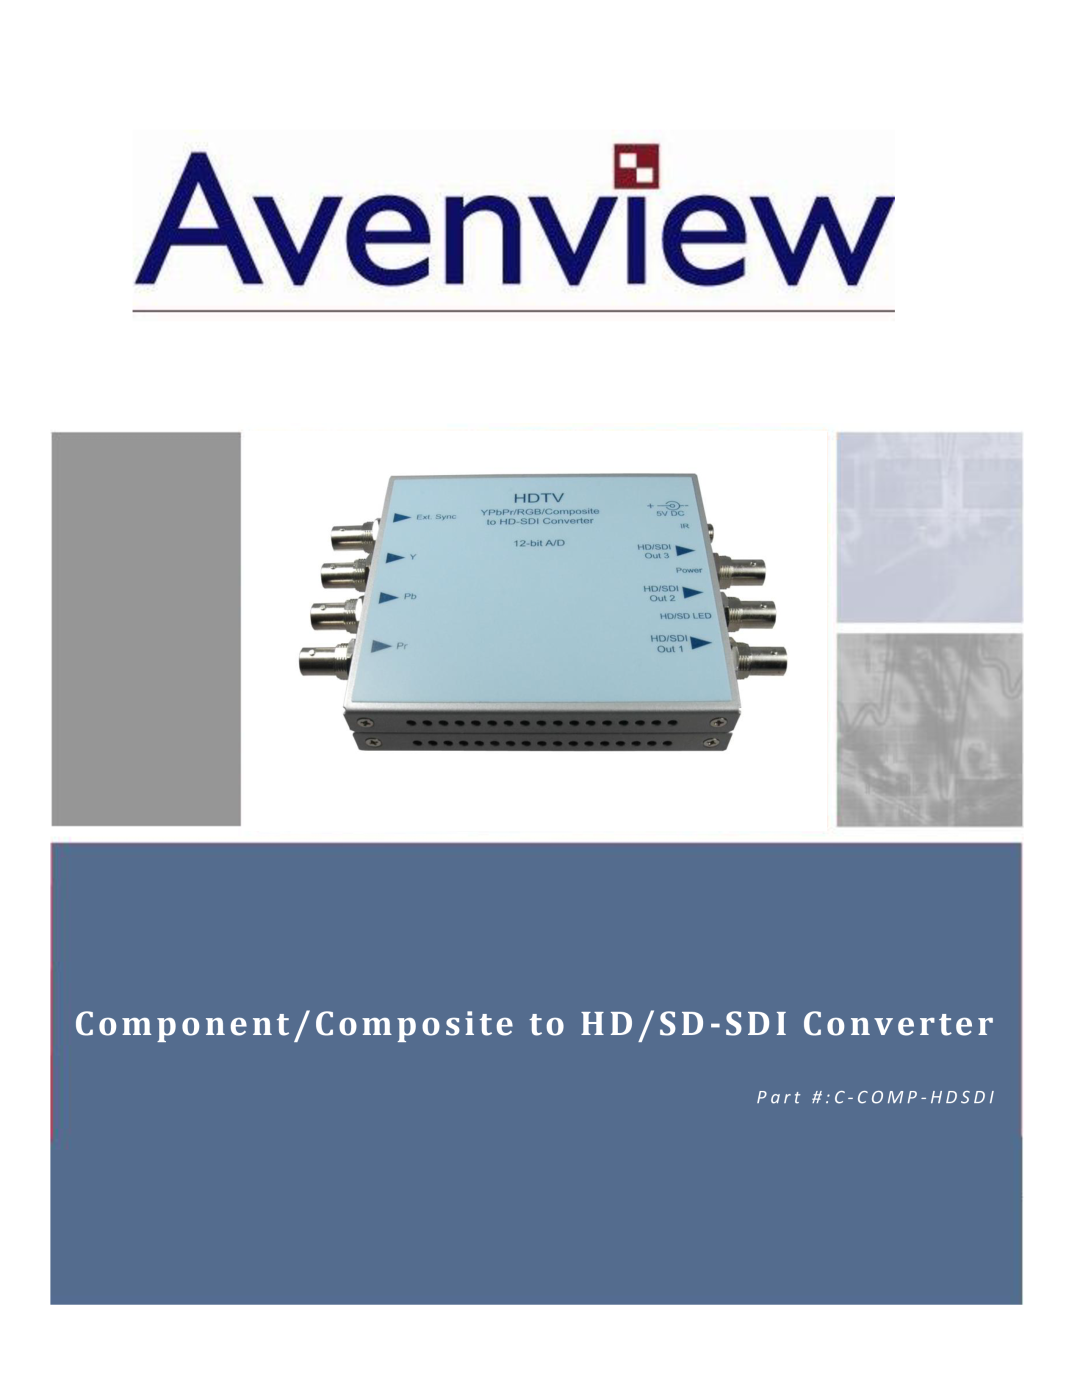 Avenview C-COMP-HDSDI manual Component/Composite to HD/SD -SDI Converter, P a r t # C - C O M P - H D S D 